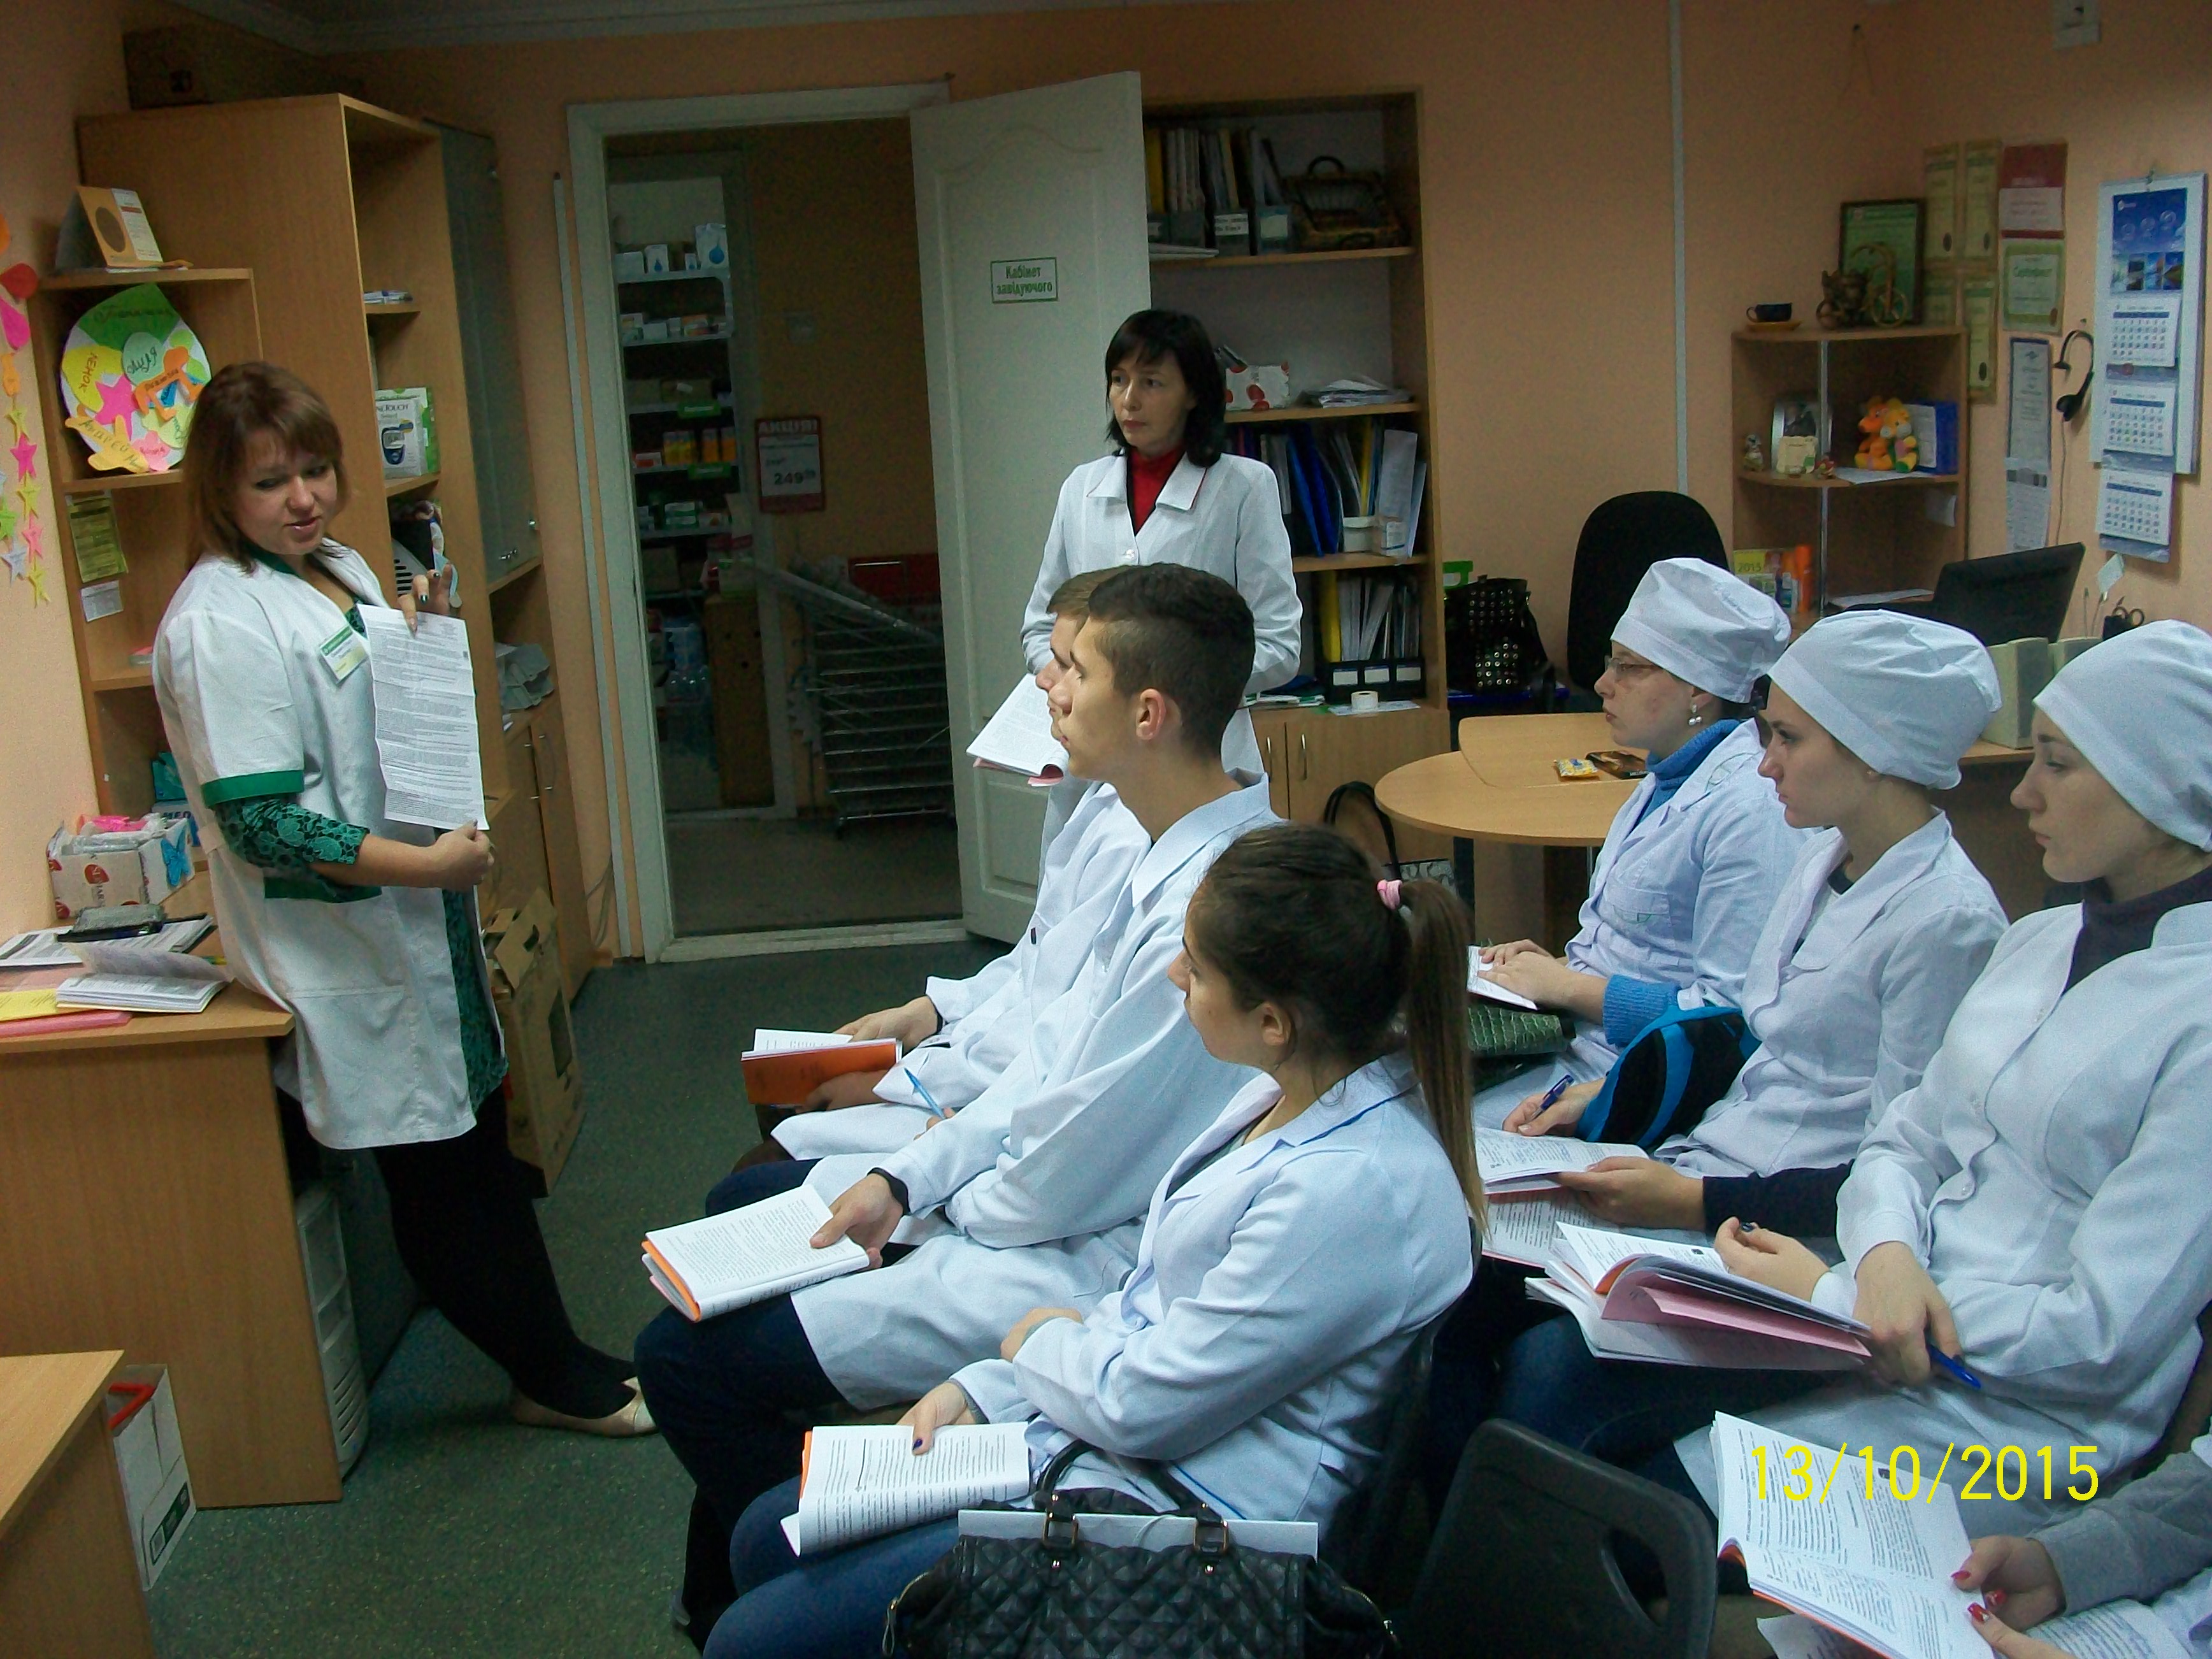 13 жовтня 2015 року відбулось практичне заняття в аптеці для студентів 1 курсу спеціальності "Фармація" на базі ТОВ "Аптека Доброго Дня"